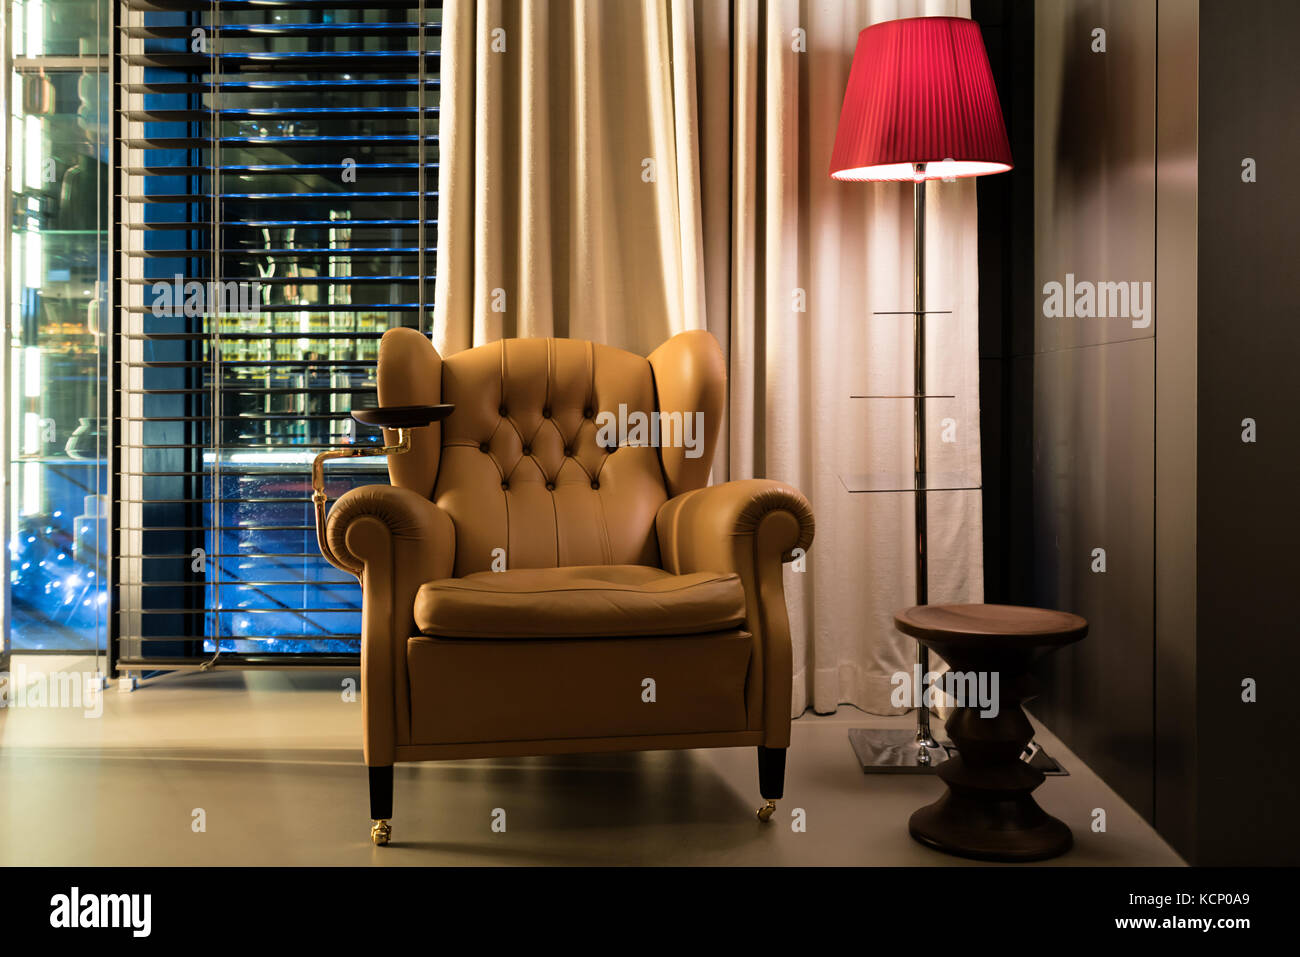 Leder Sessel Couchtisch und Stehleuchte in der Lobby im Hotel. interior design Klassische Leder Stuhl und Lampe im dim Zimmer. Stockfoto